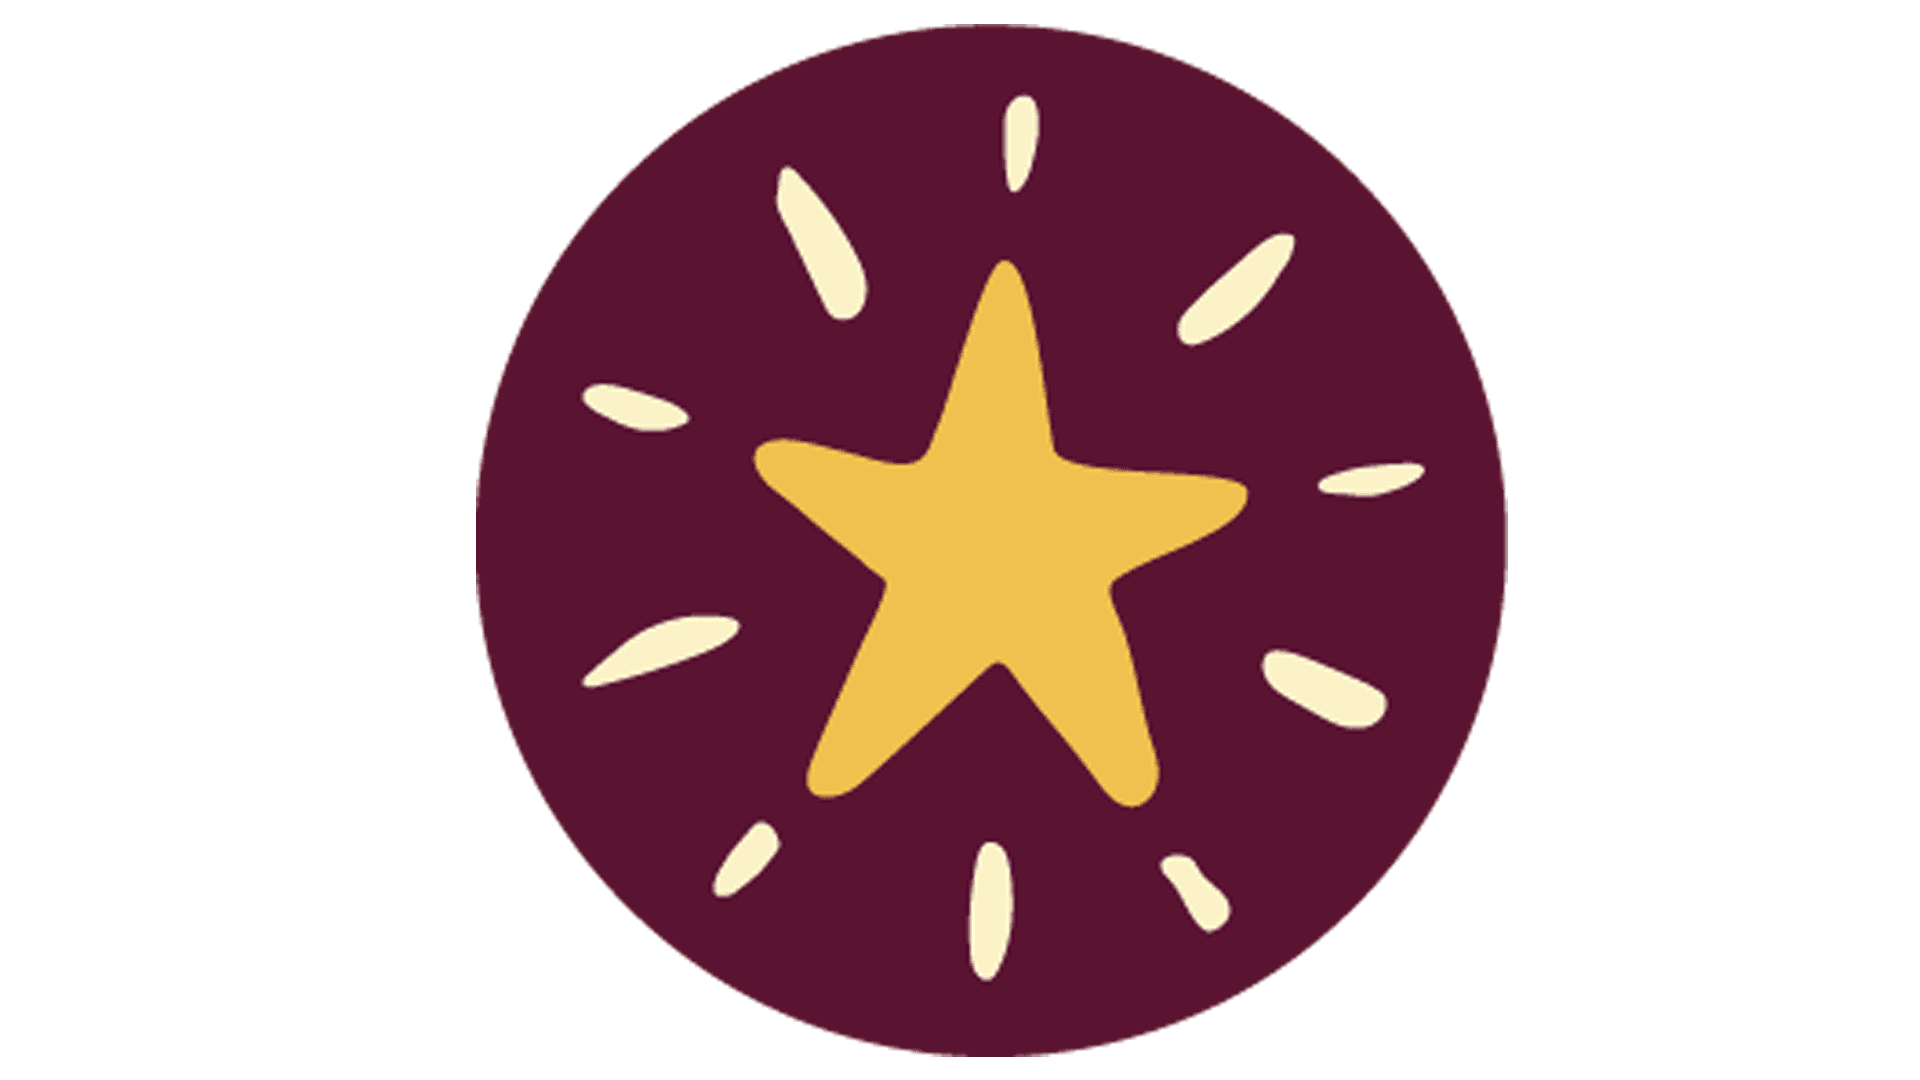 Illustration som föreställer en gul stjärna i vinröd cirkel.